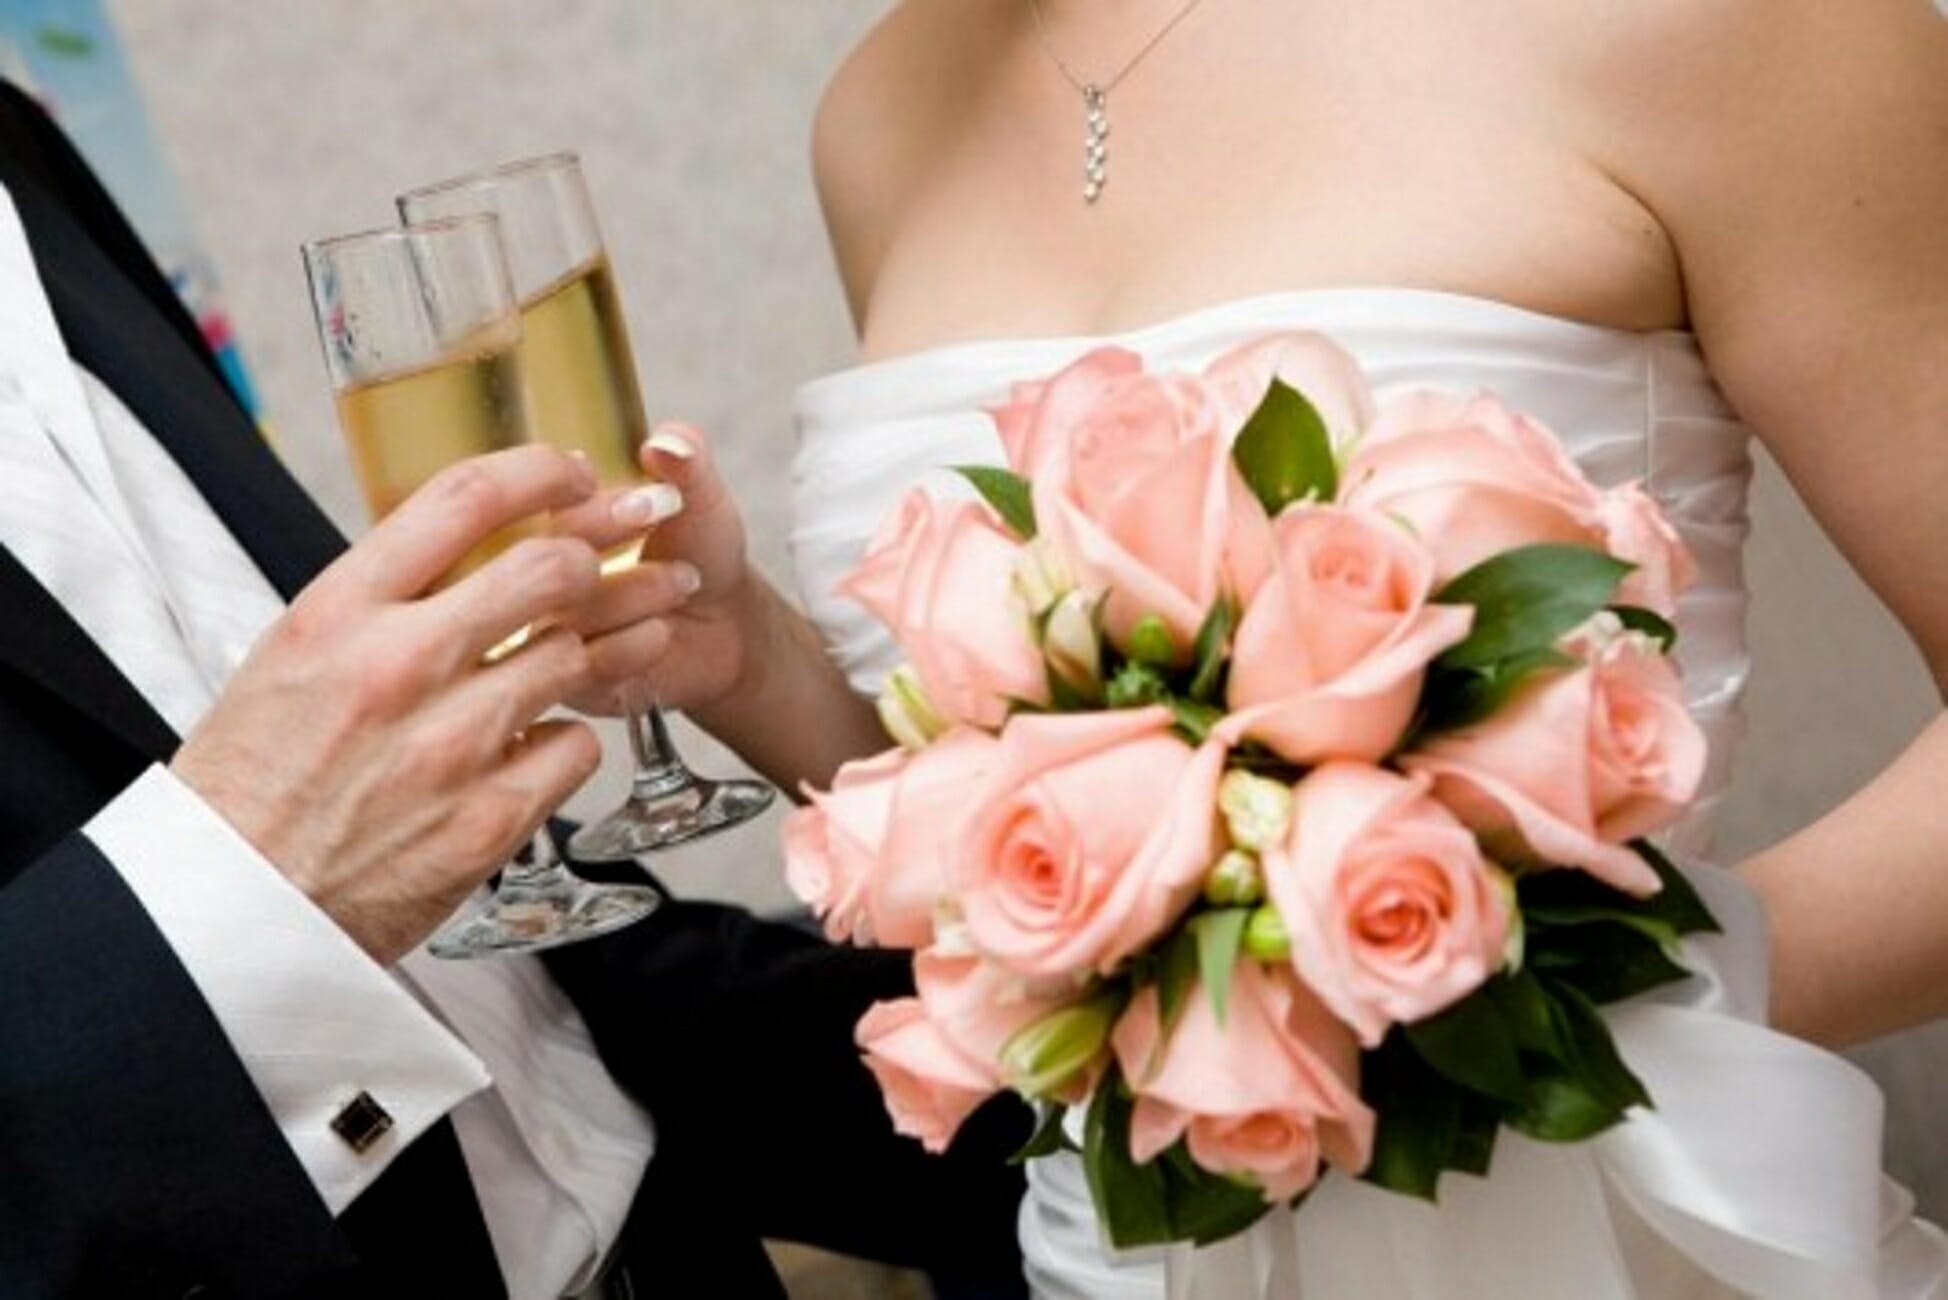 Ηράκλειο: Επικίνδυνες καταστάσεις σε γαμήλιο γλέντι! Γαμπρός και νύφη έμαθαν τα νέα από αστυνομικούς